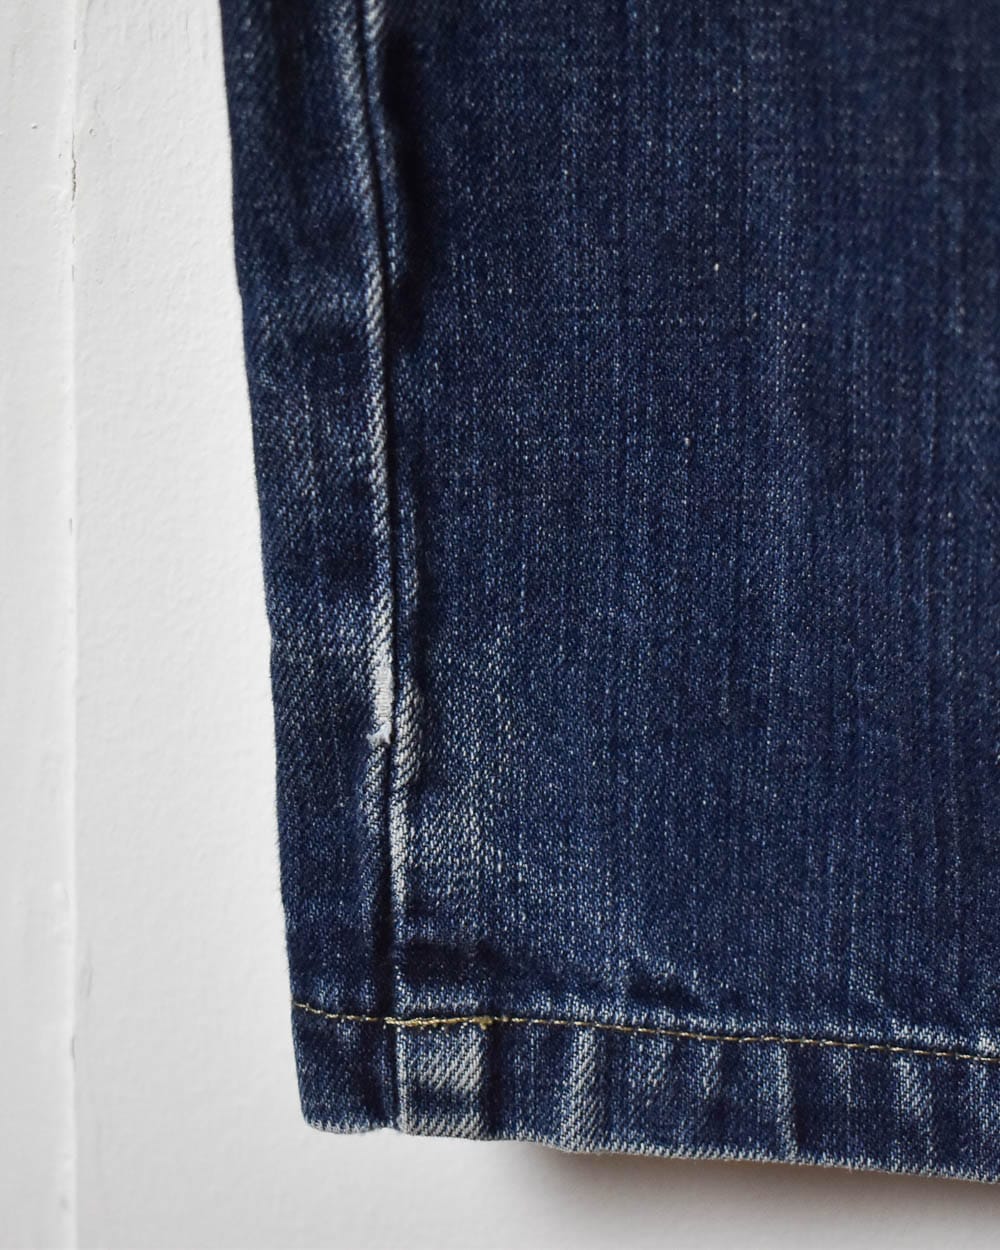 Blue Dickies Jeans - W34 L34